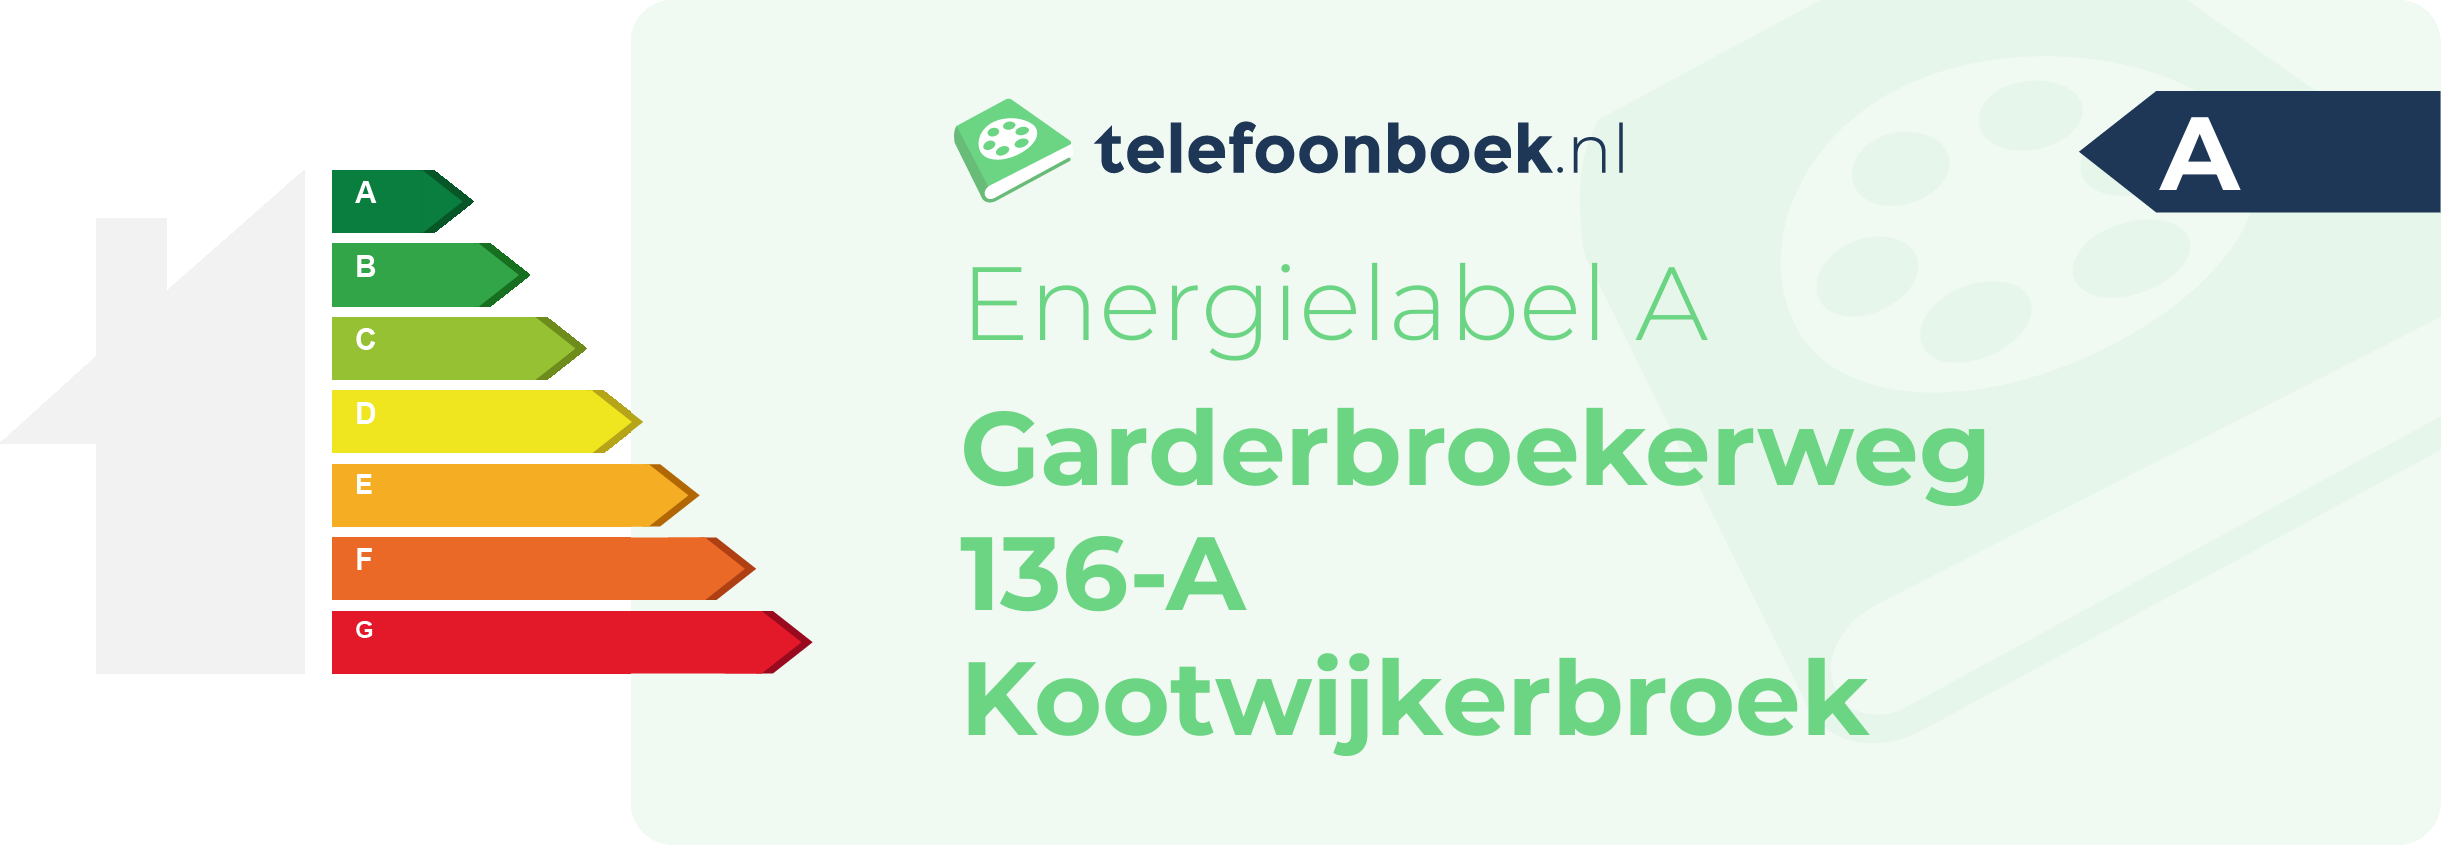 Energielabel Garderbroekerweg 136-A Kootwijkerbroek